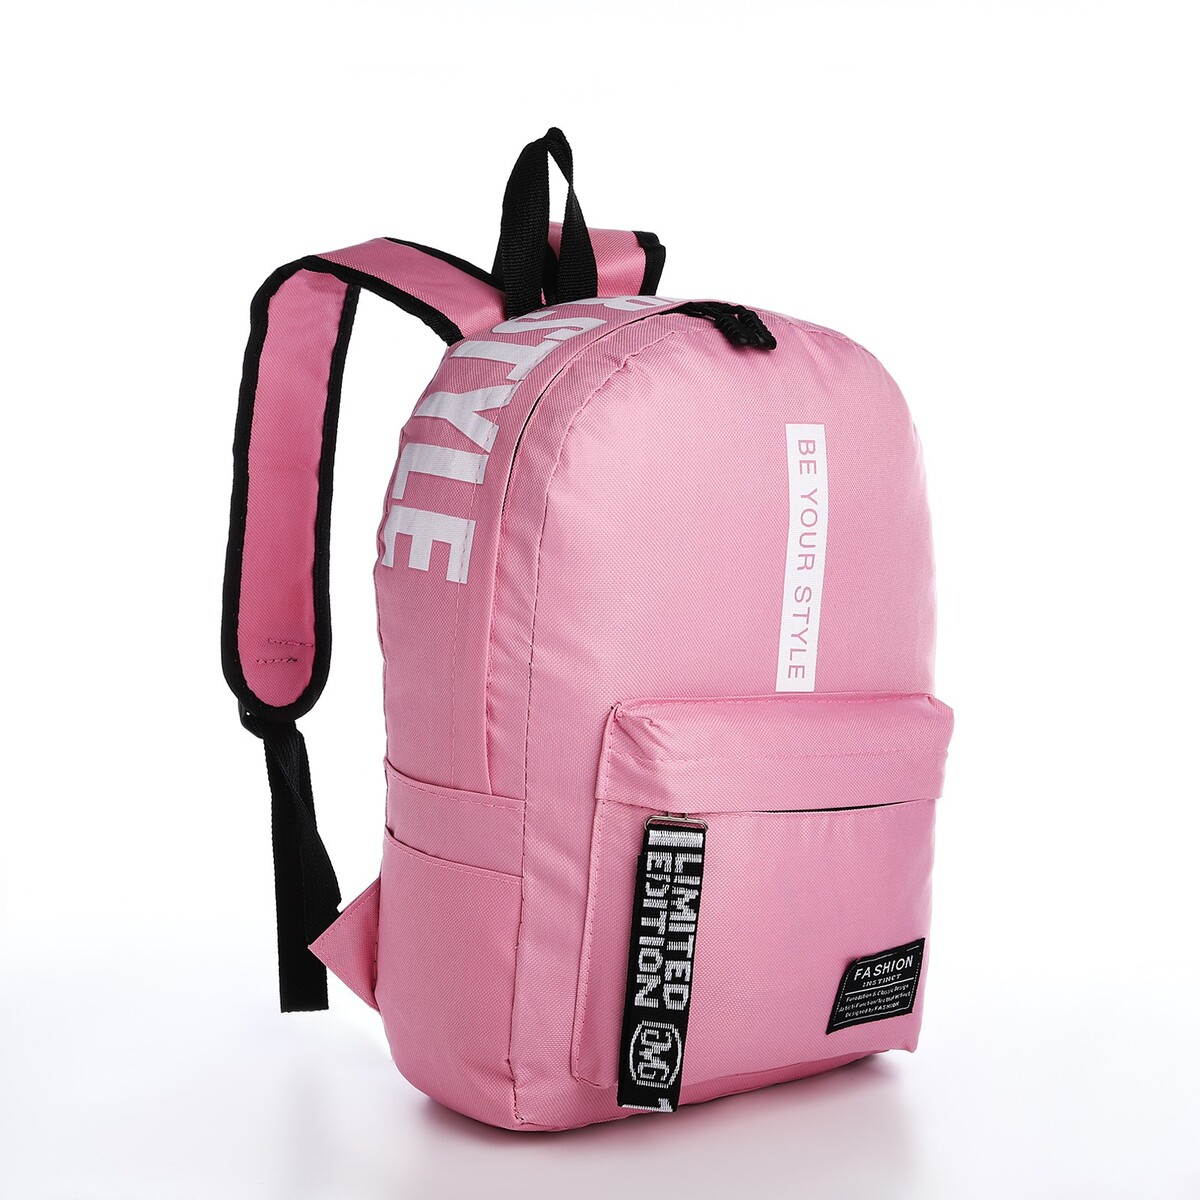 Рюкзак на молнии, наружный карман, 2 боковых кармана, цвет розовый рюкзак отдел на молнии наружный карман 2 боковых кармана кошелёк серый